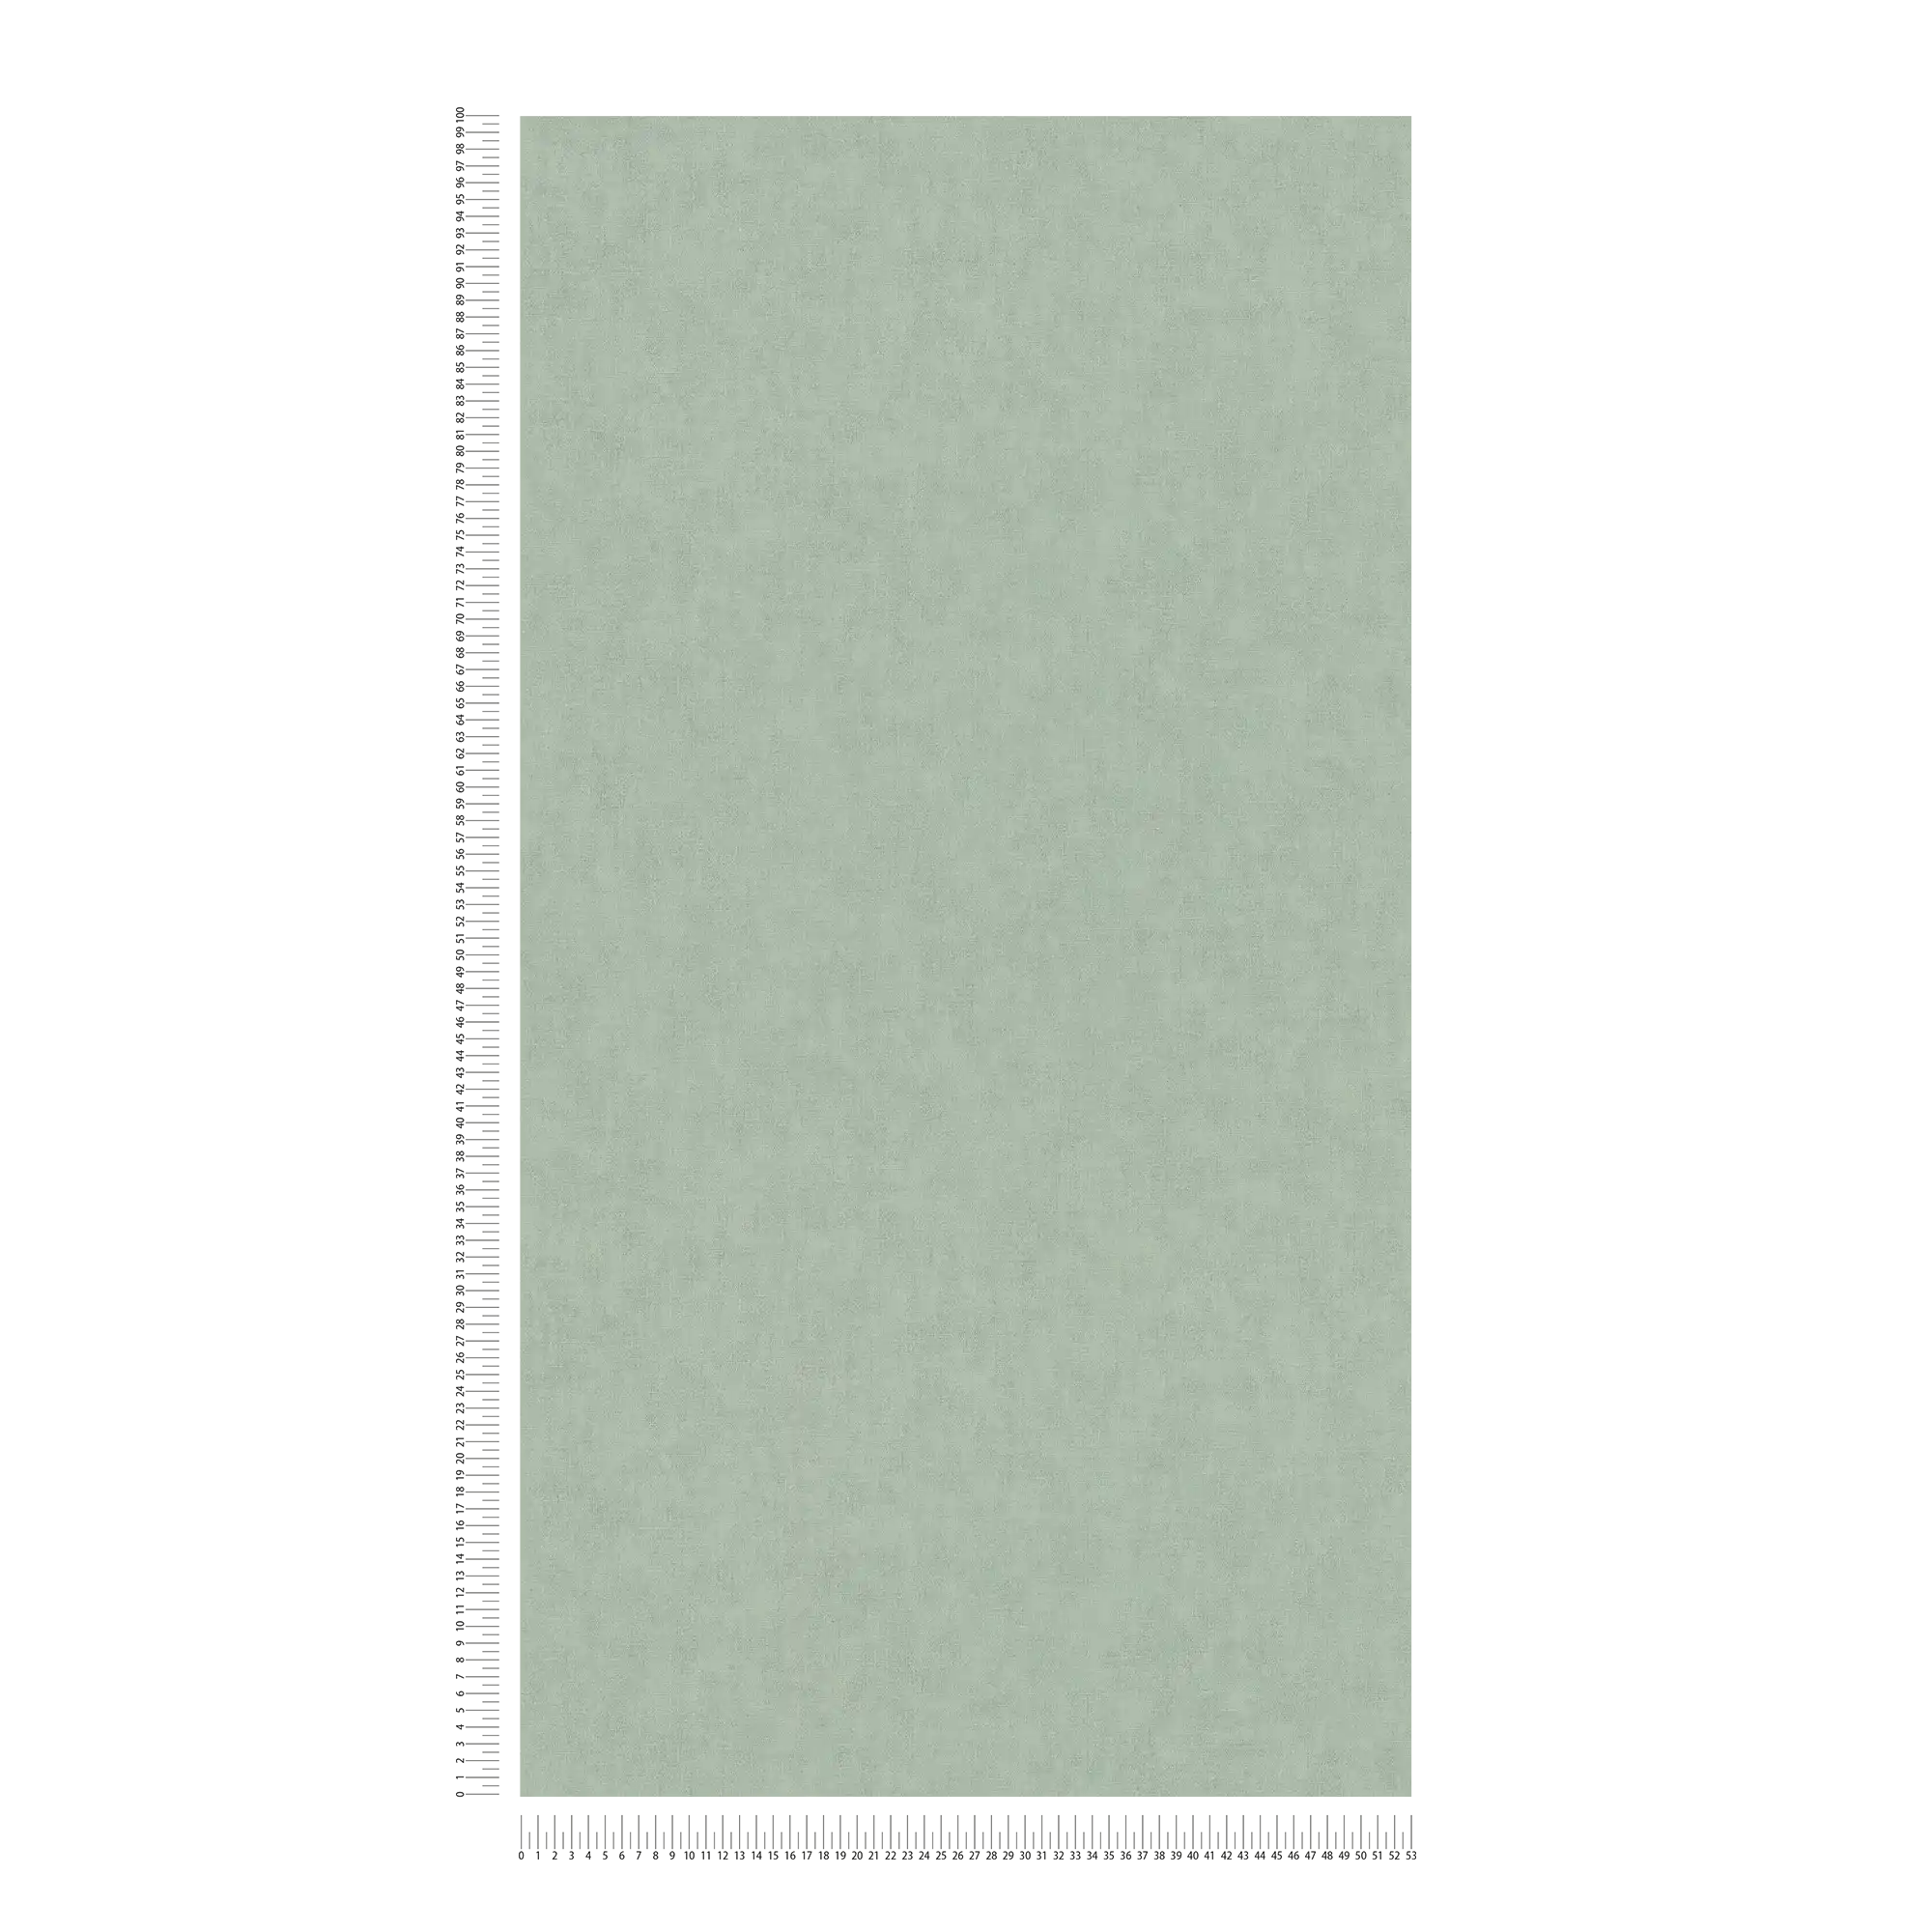             Non-woven wallpaper textile look Scandinavian style - grey, green
        